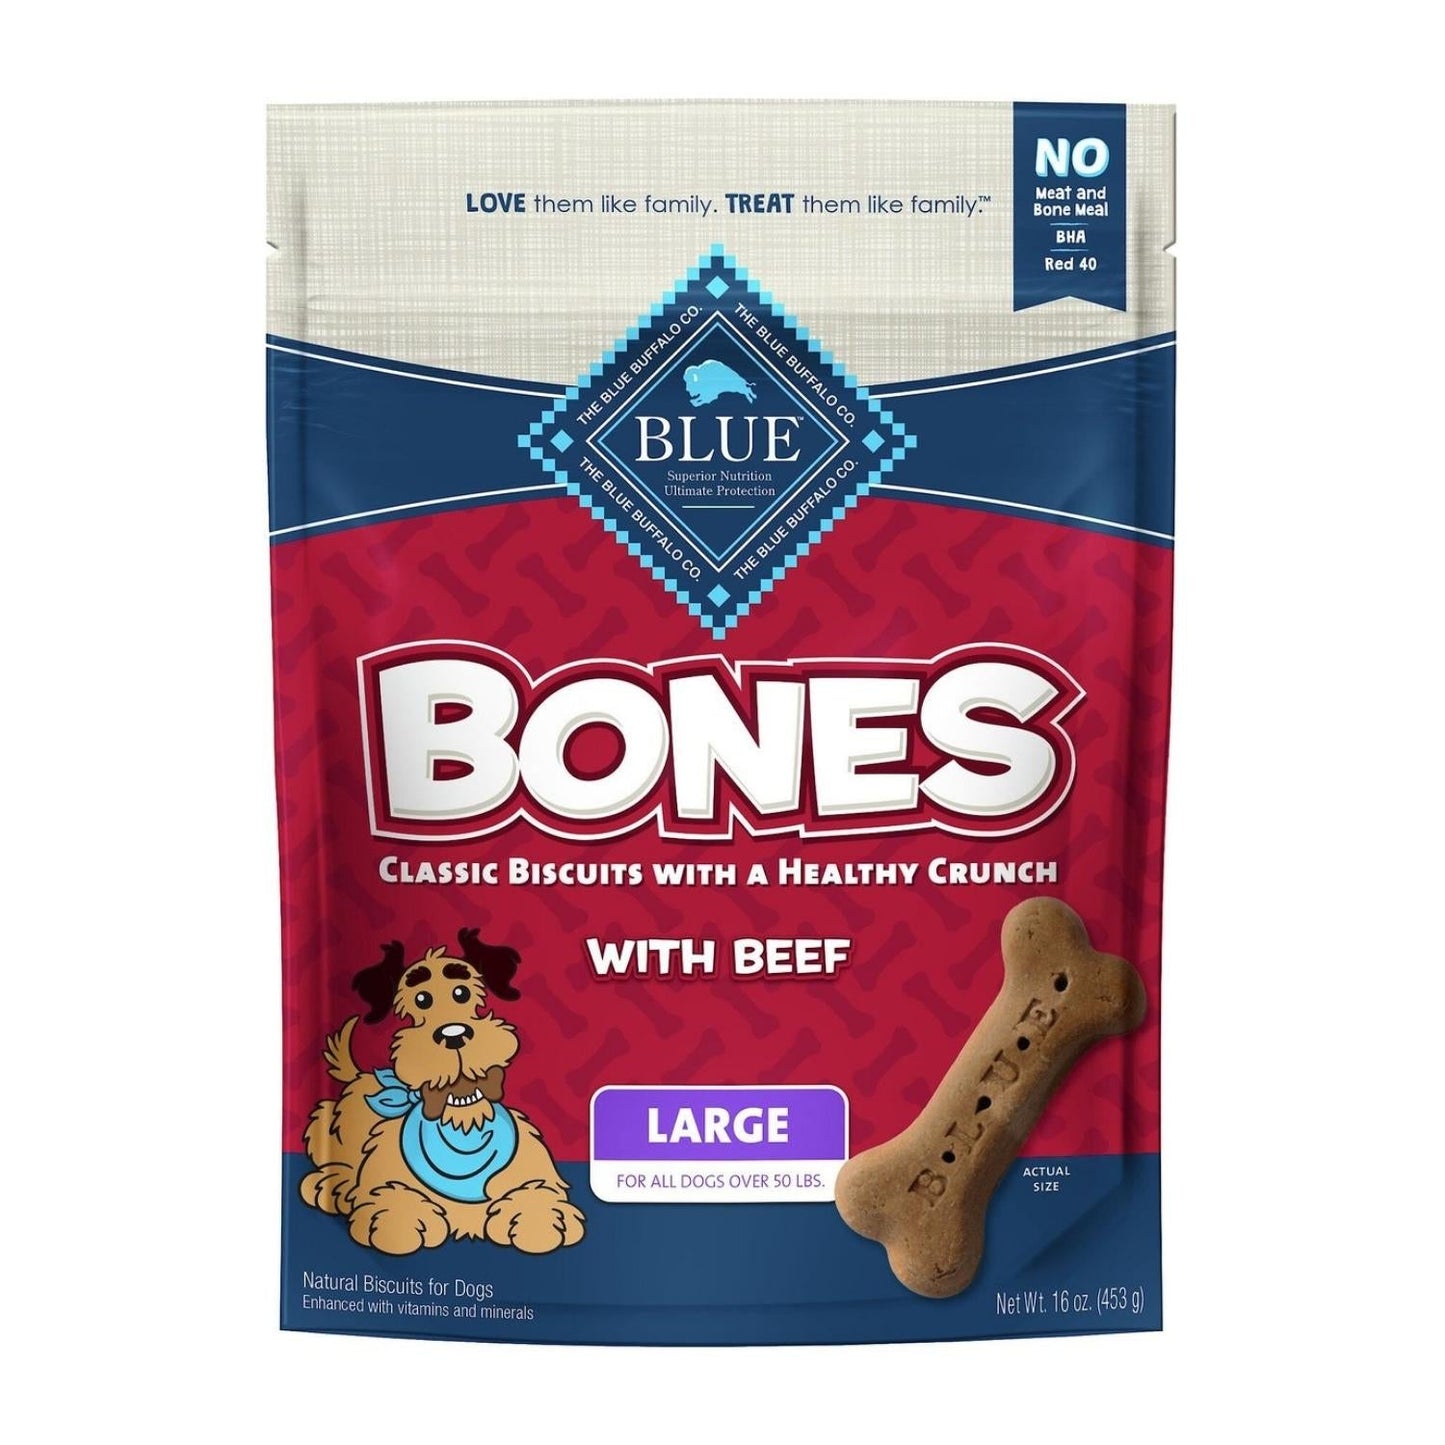 **Blue Buffalo Bones Dog 16oz. Beef Large Biscuit